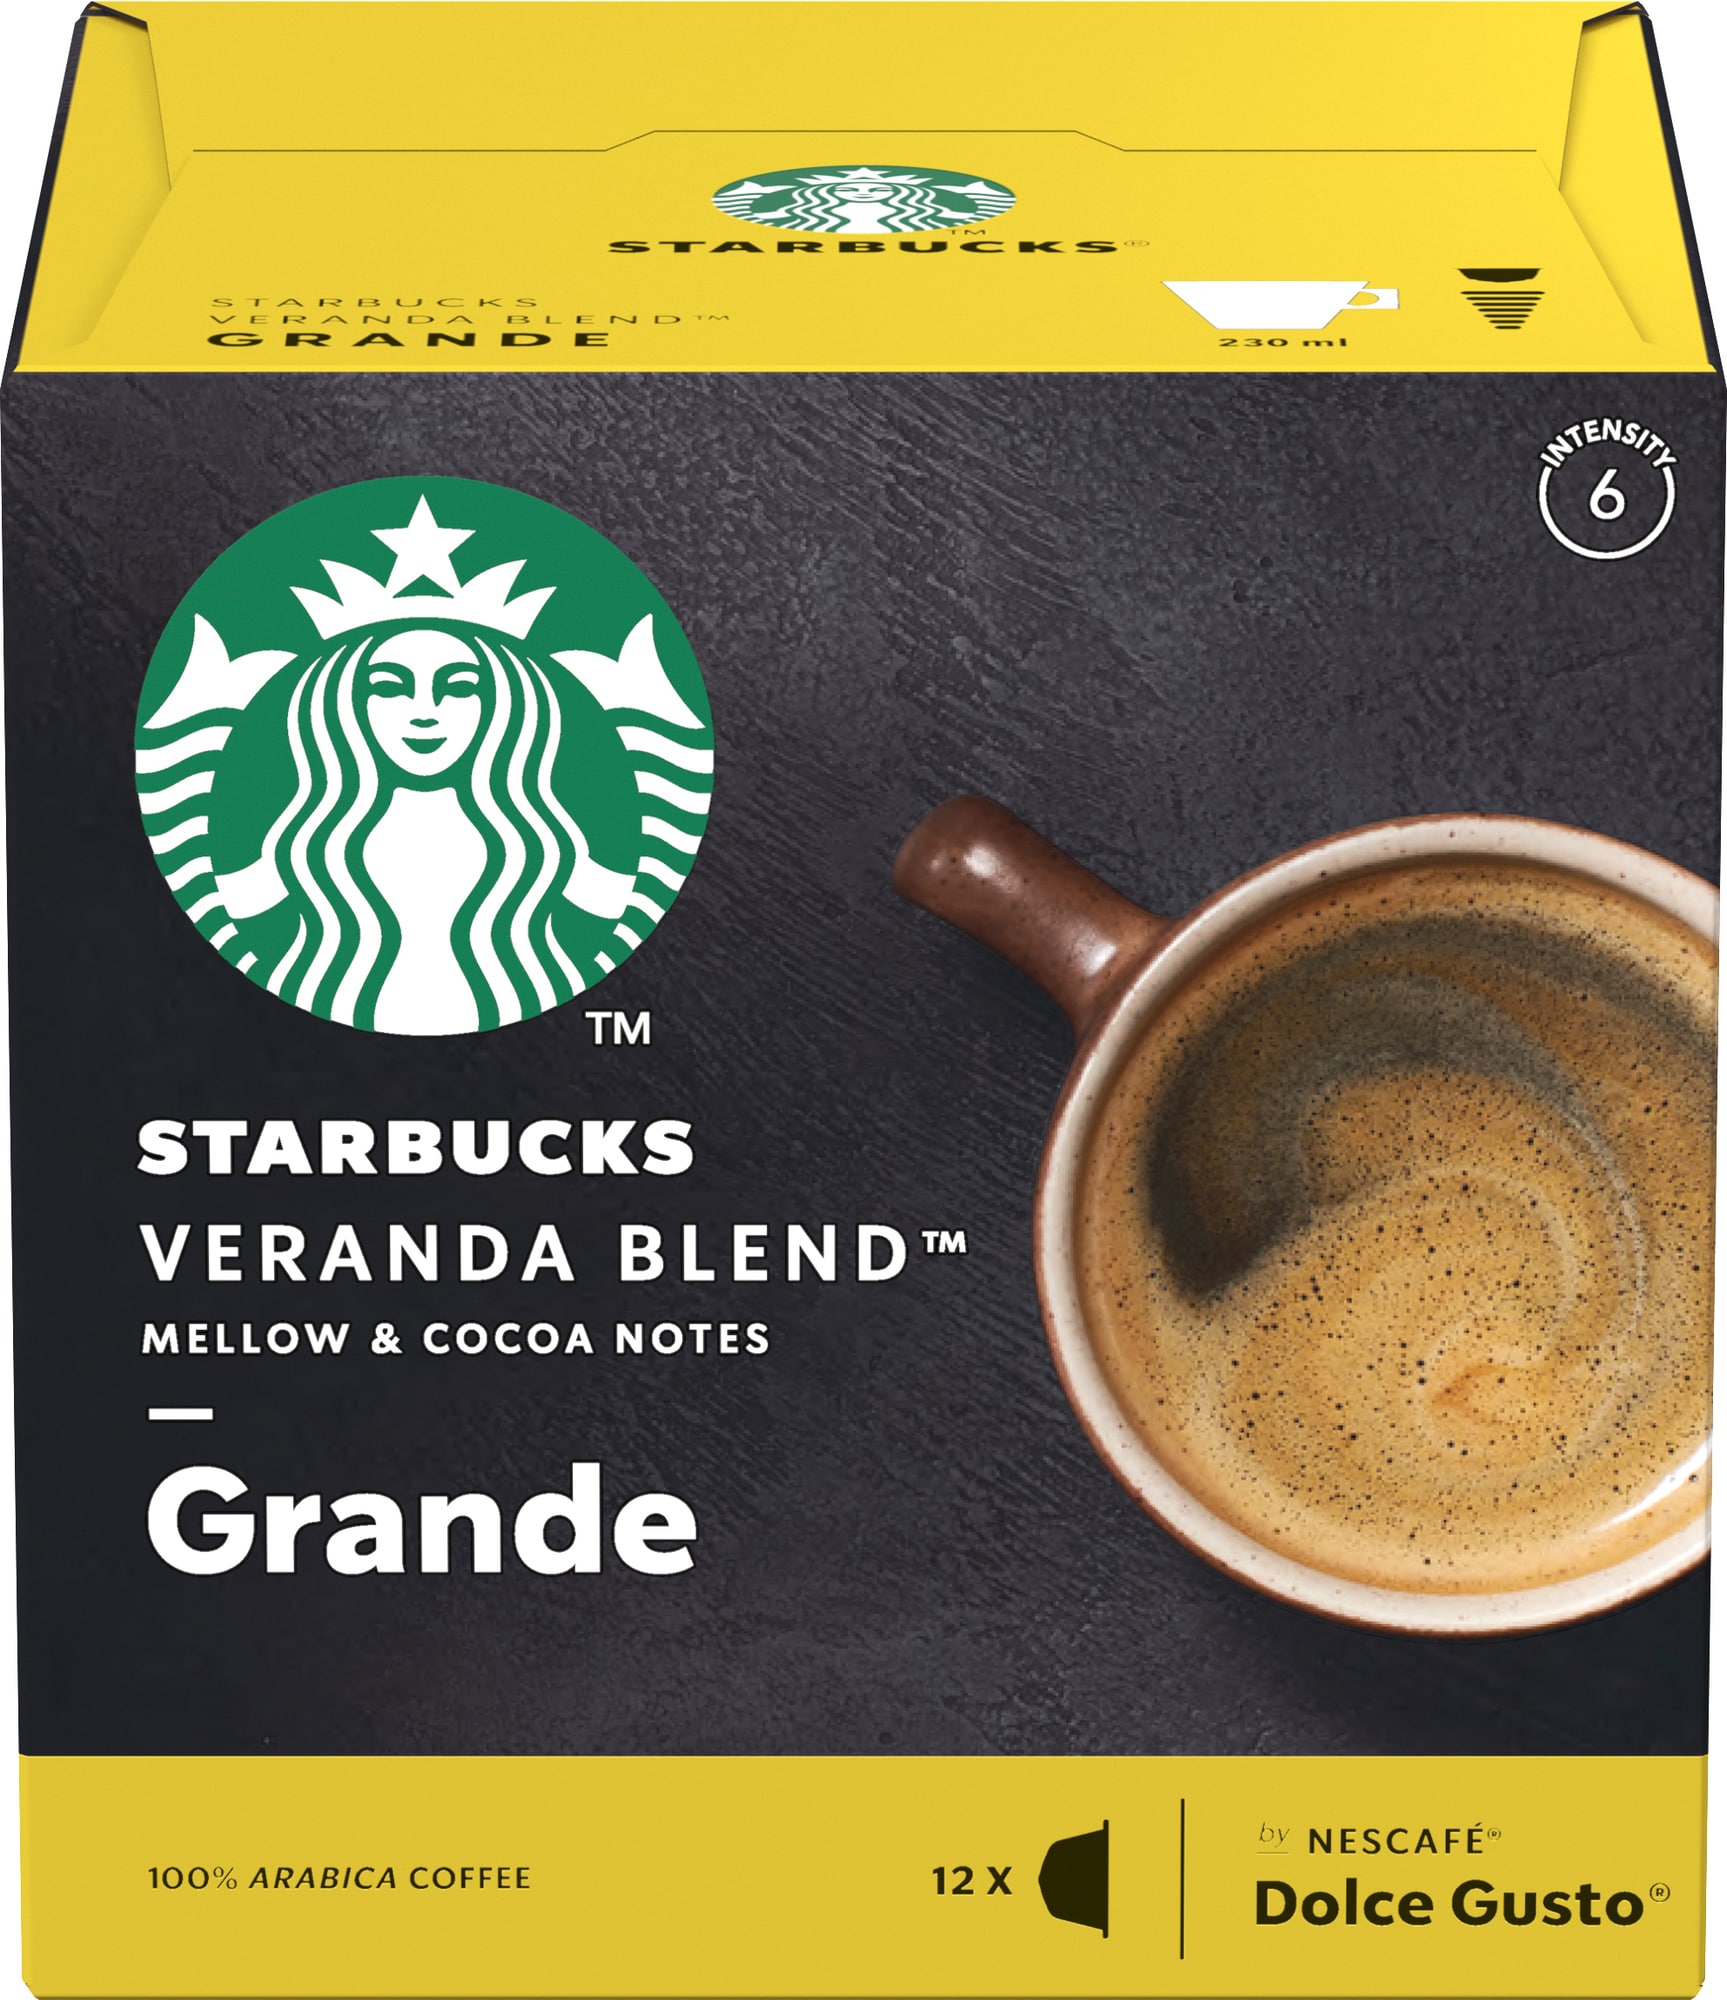 Starbucks Veranda Blend kaffekapsler fra Nescafé Dolce Gusto